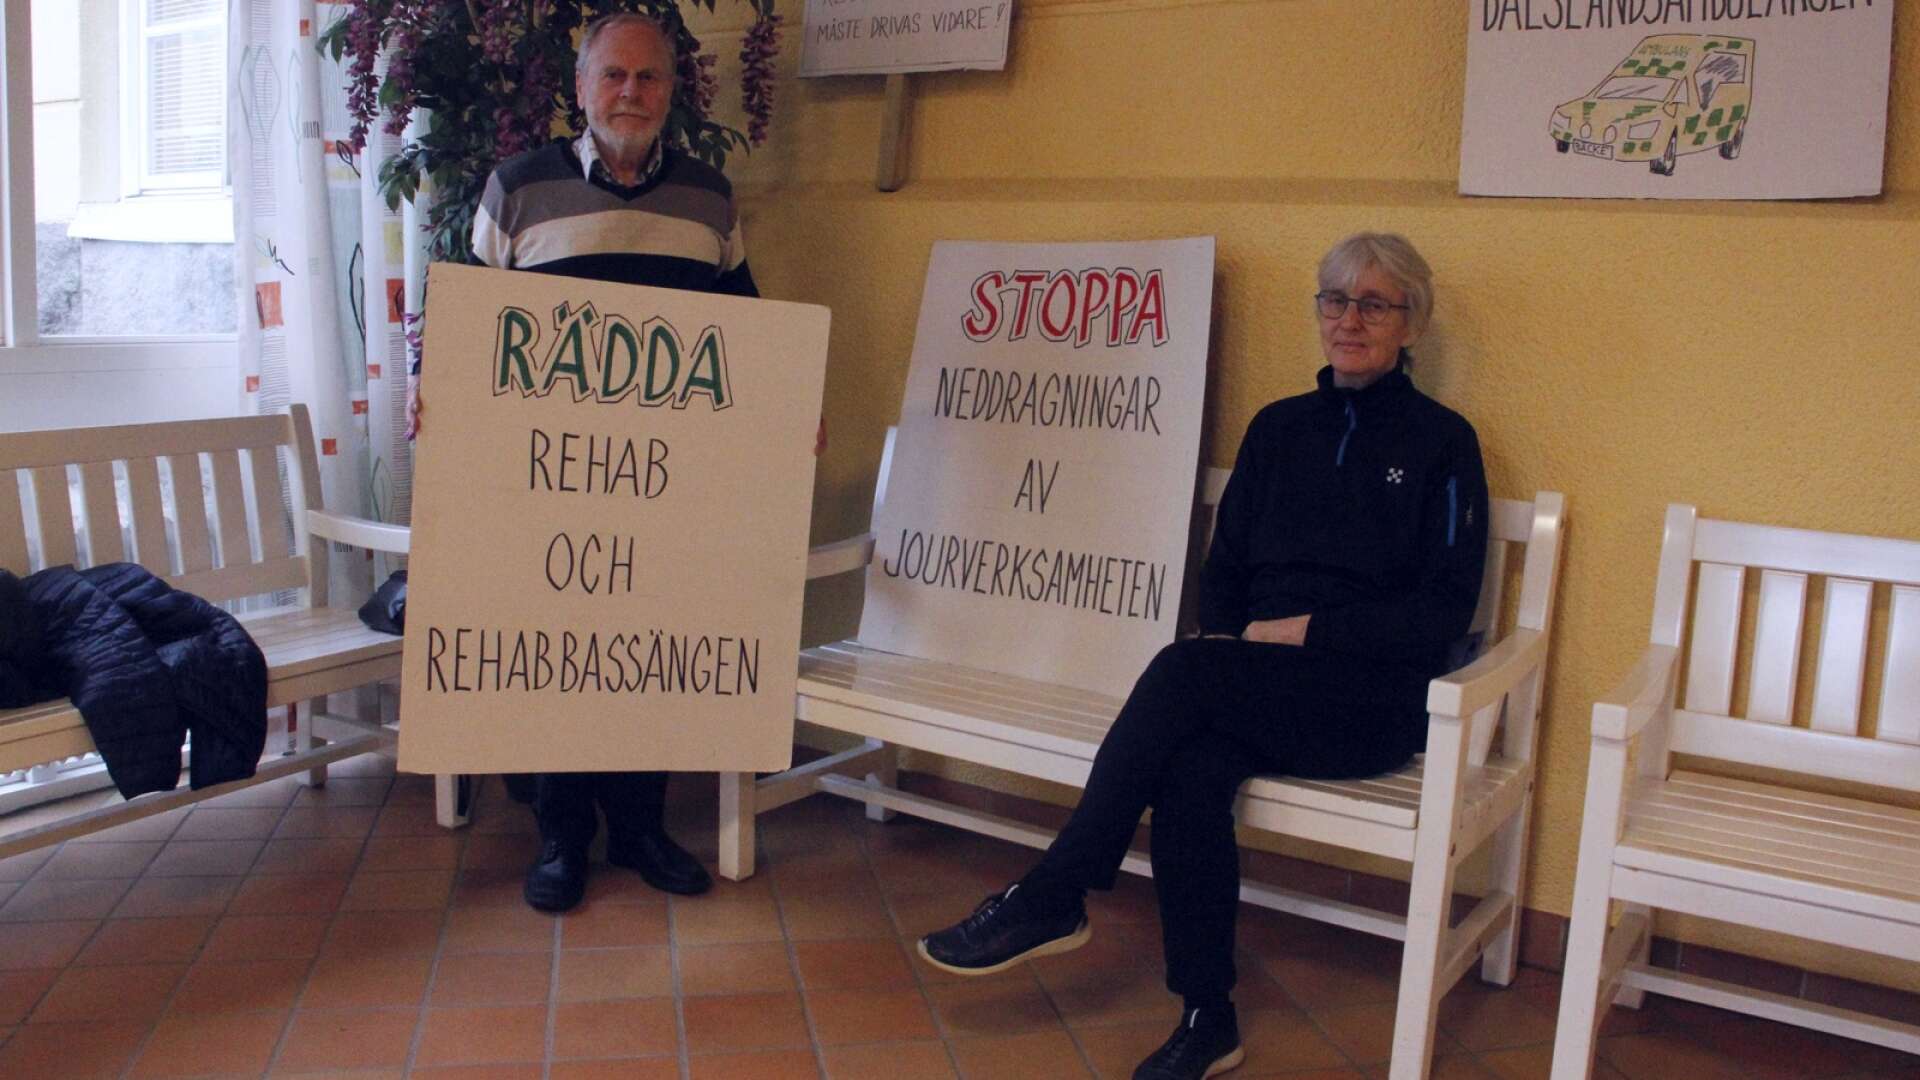 Frivilliga ockuperar på Dalslands sjukhus för att uttrycka sitt missnöje över att NU-sjukvården inte tar över rehabbassängen på Dalslands sjukhus när Aleris lämnat. På bilden syns ockupanterna Leif Johansson och Boel Löfgren.